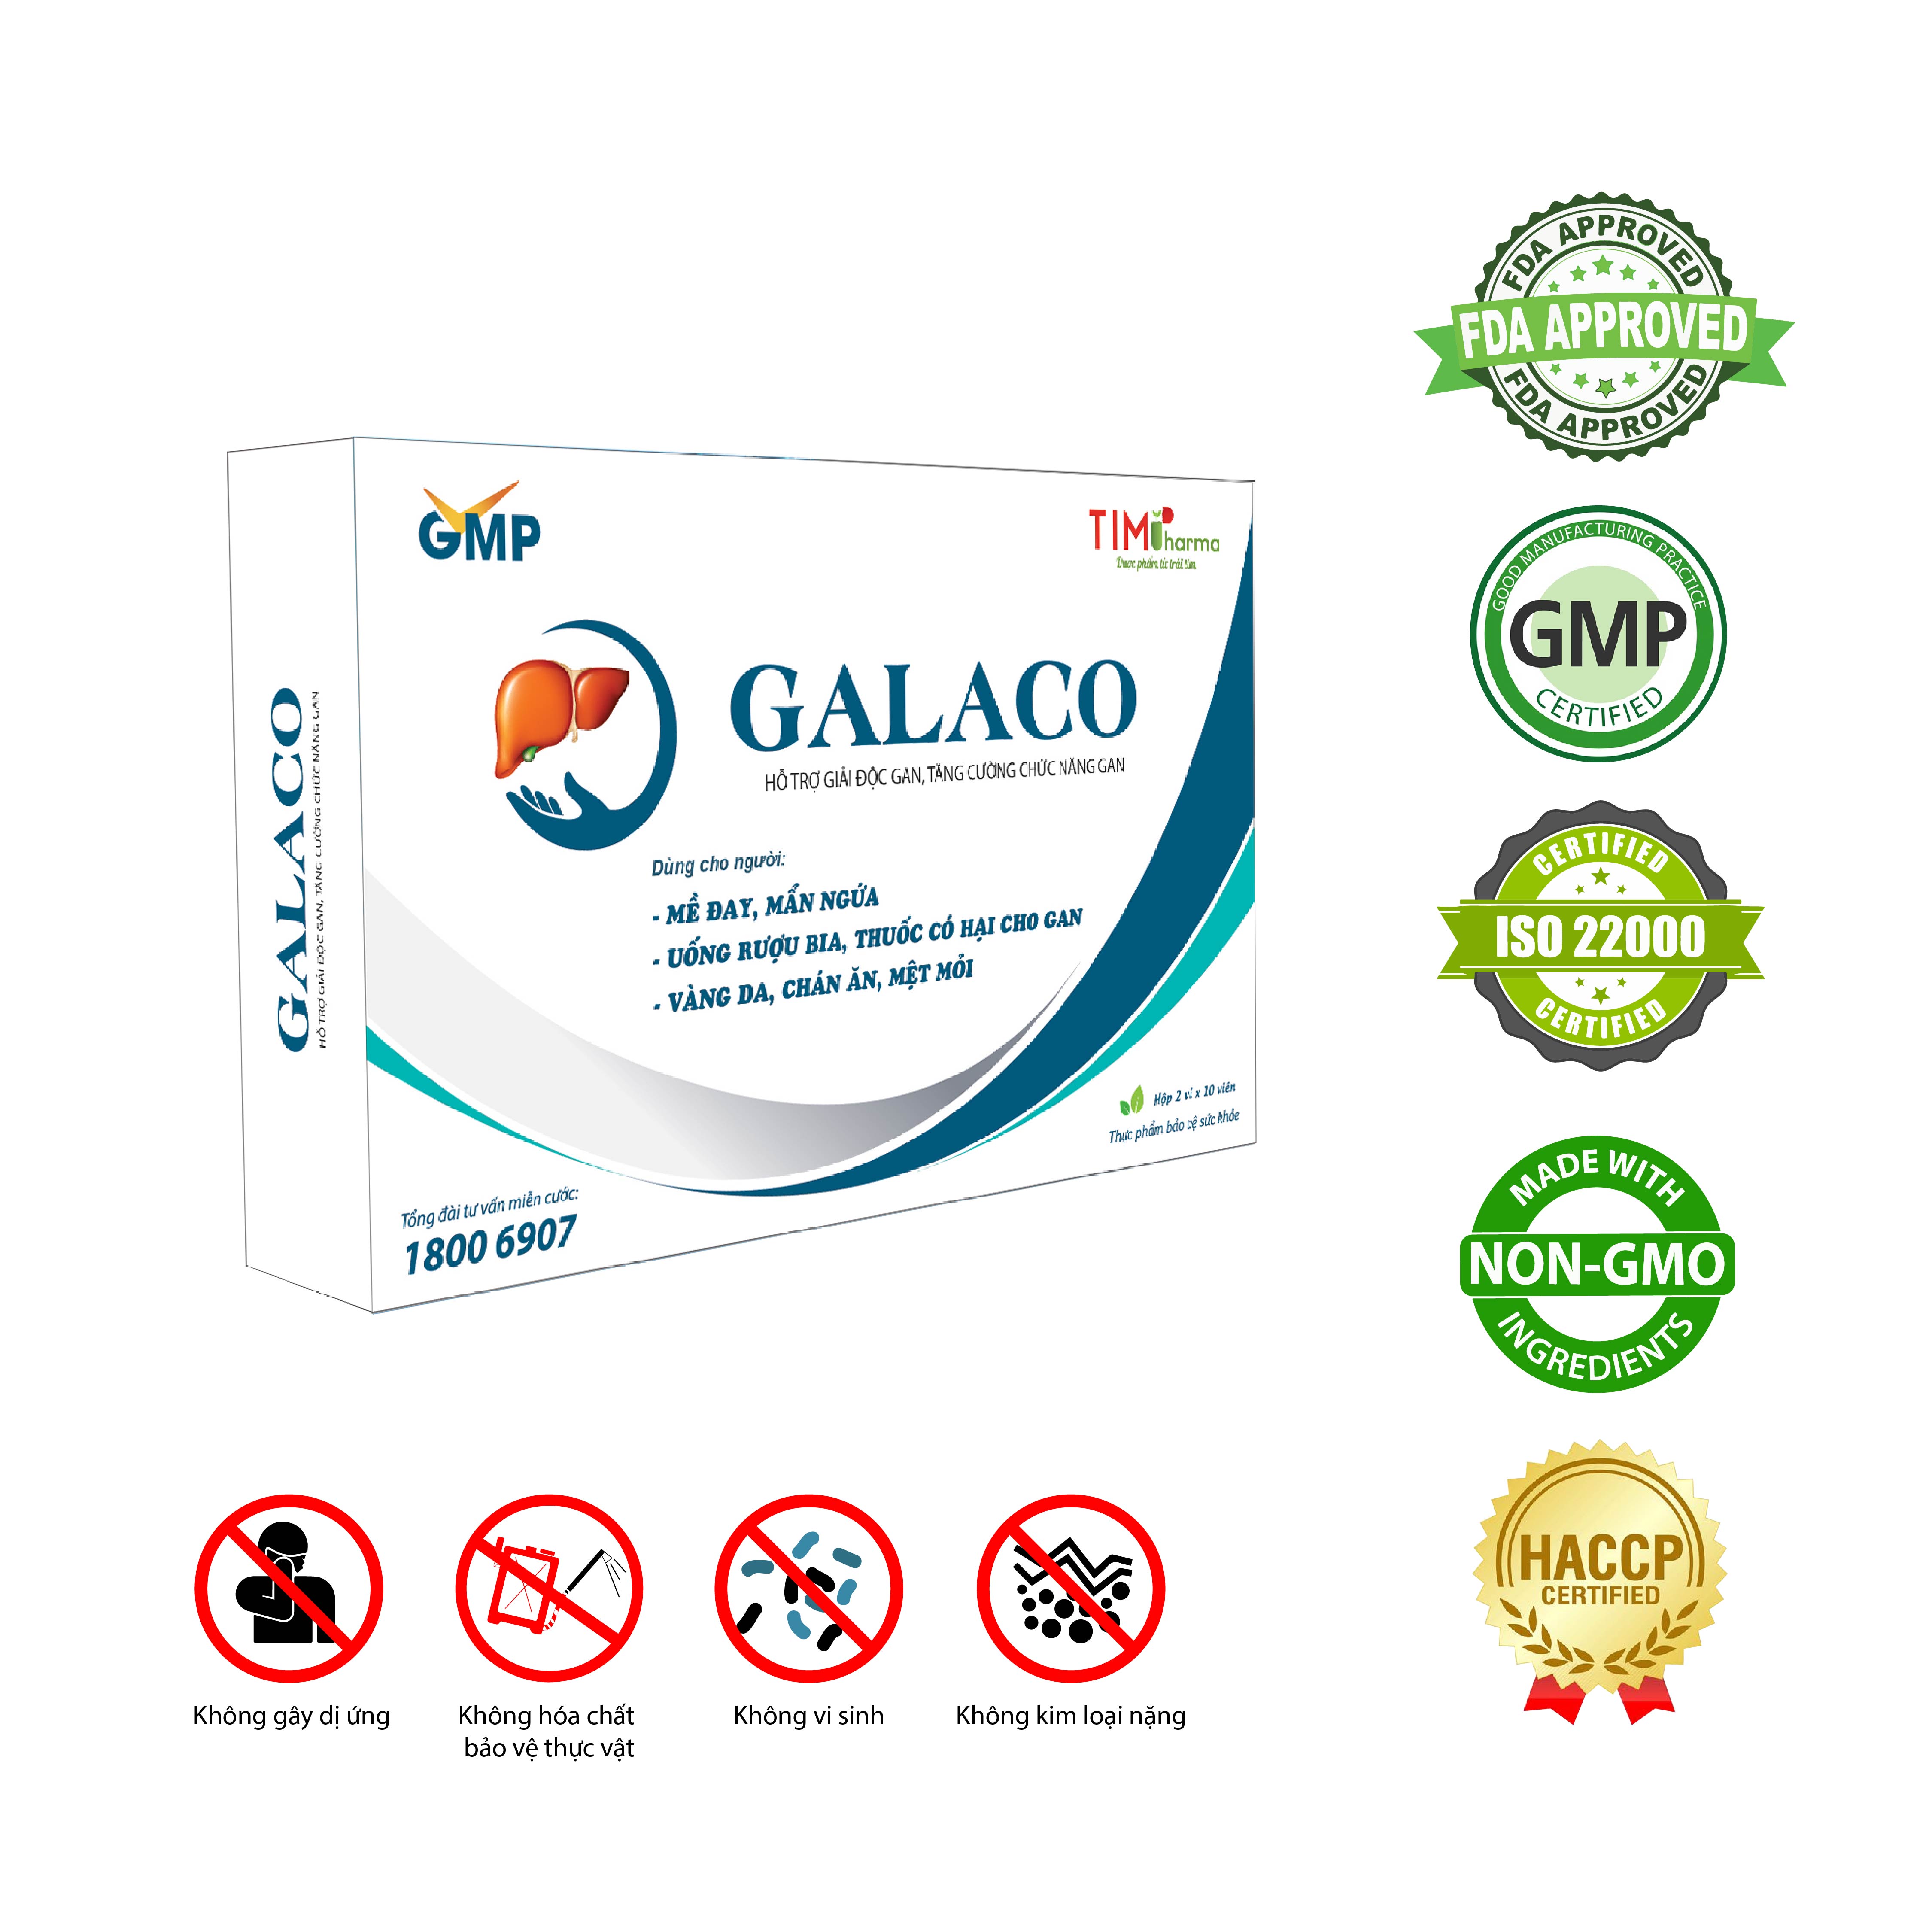 TPBVSK GALACO - Hỗ trợ giải độc gan, tăng cường chức năng gan